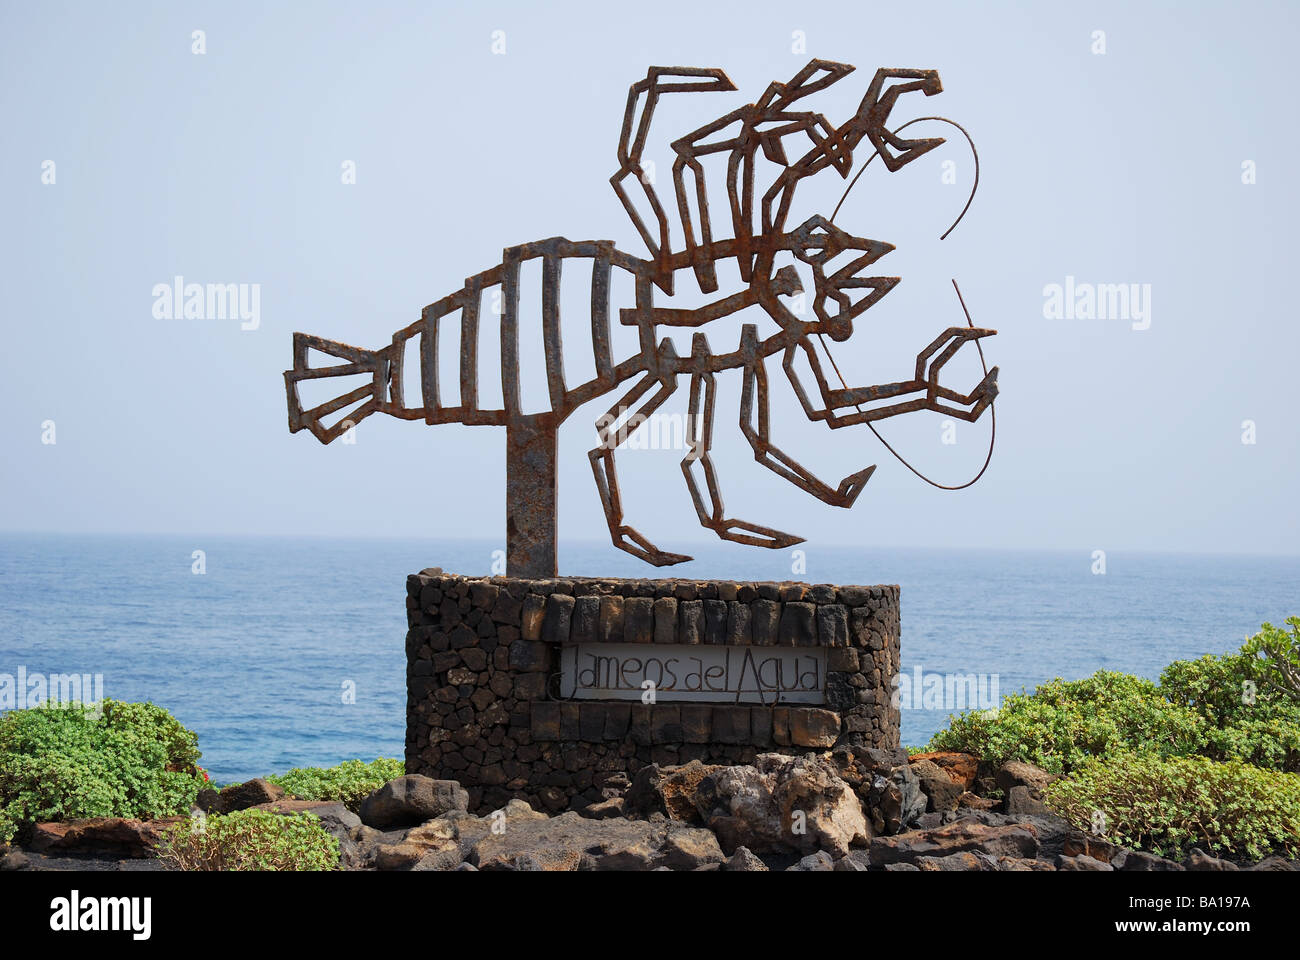 Panneau de sculpture de homard, Jameos del Agua, Arrietta, province de Las Palmas, Lanzarote, îles Canaries, Espagne Banque D'Images